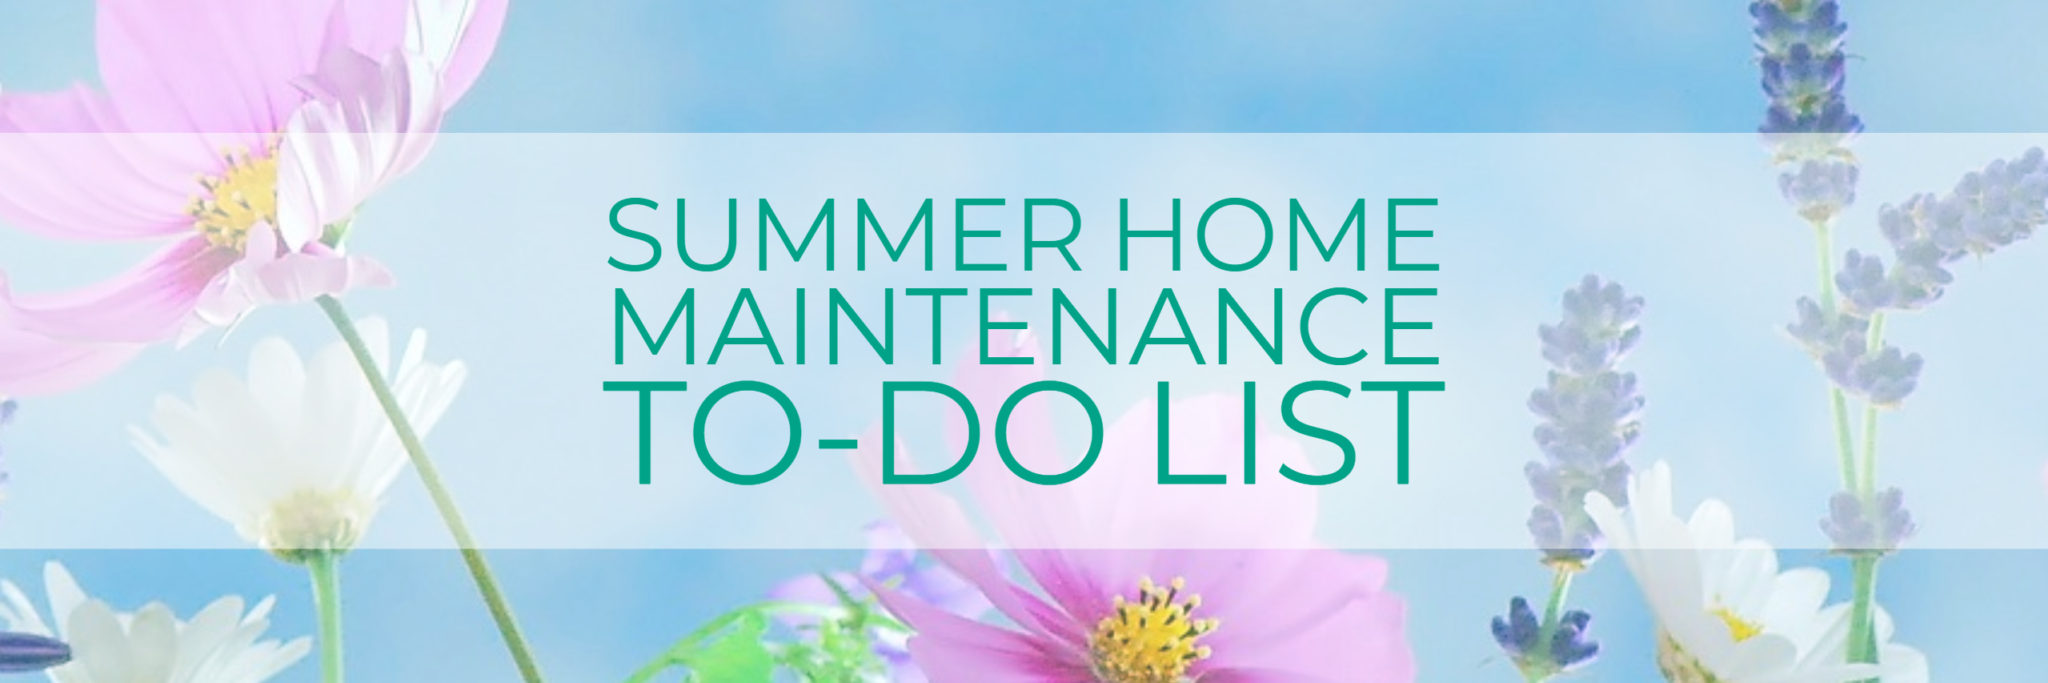 summer home maintenance